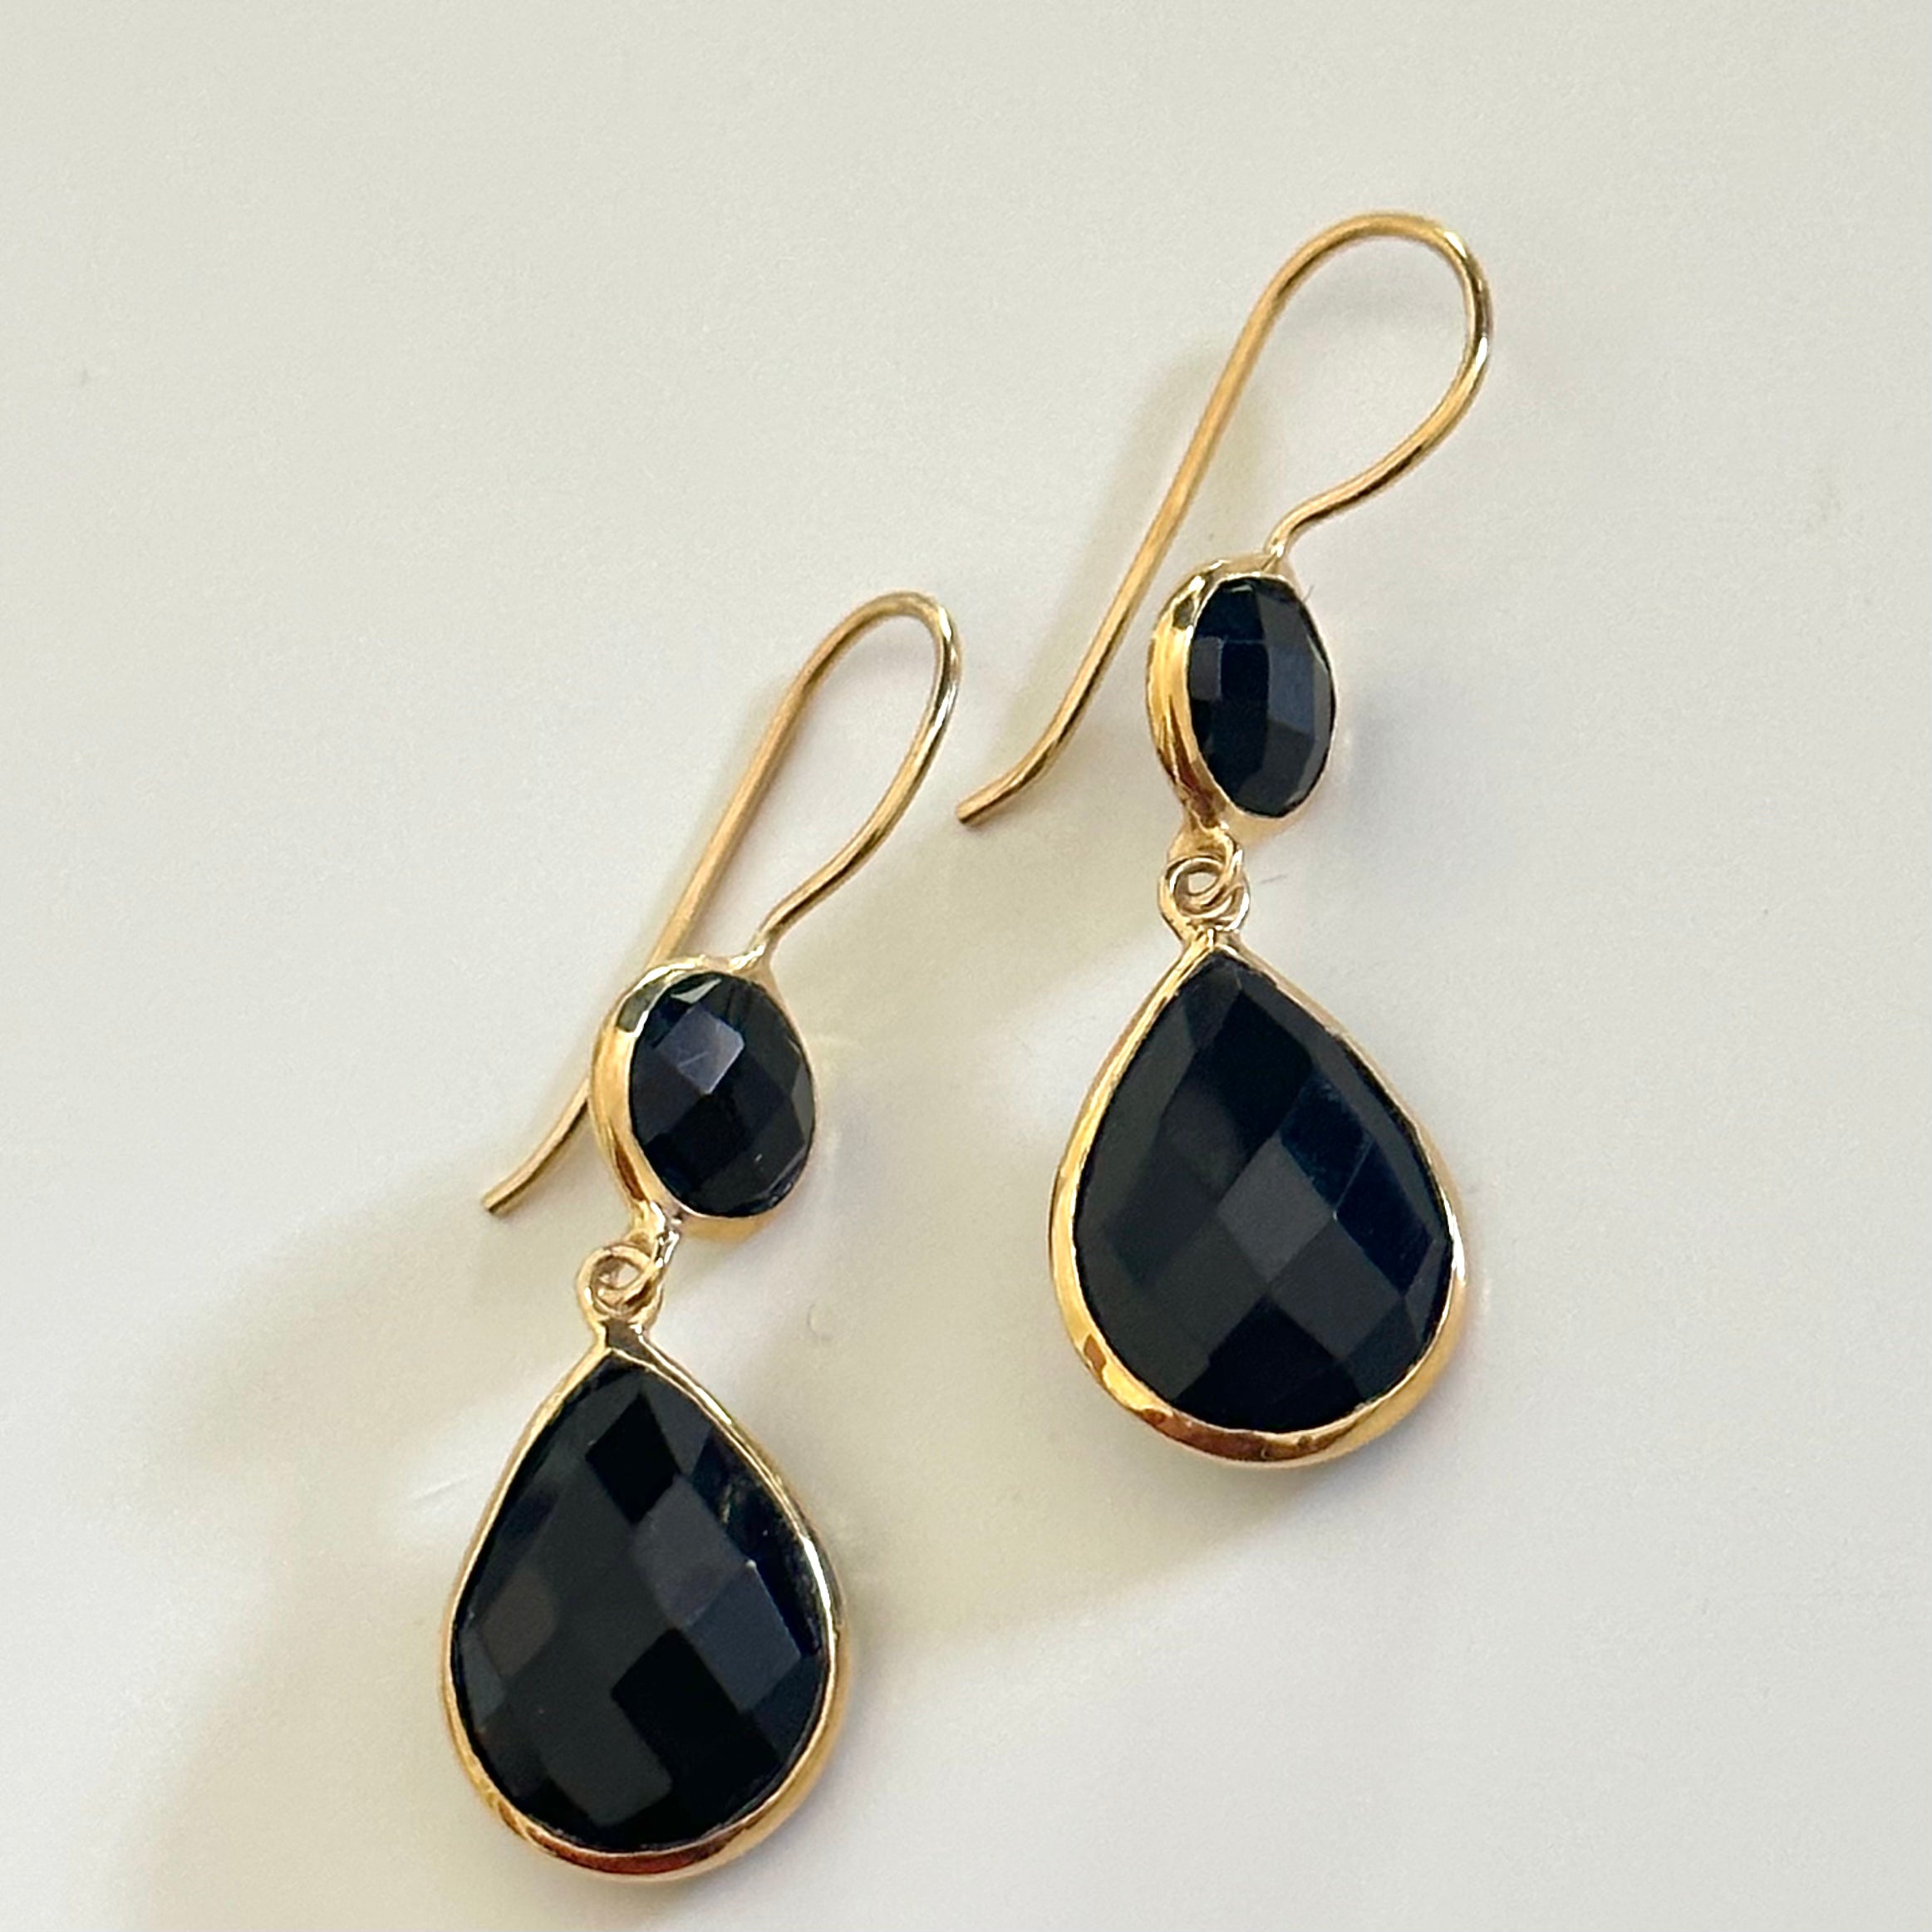 Black Onyx Gemstone Two Stone Earrings in Gold Plated Sterling Silver - Teardrop